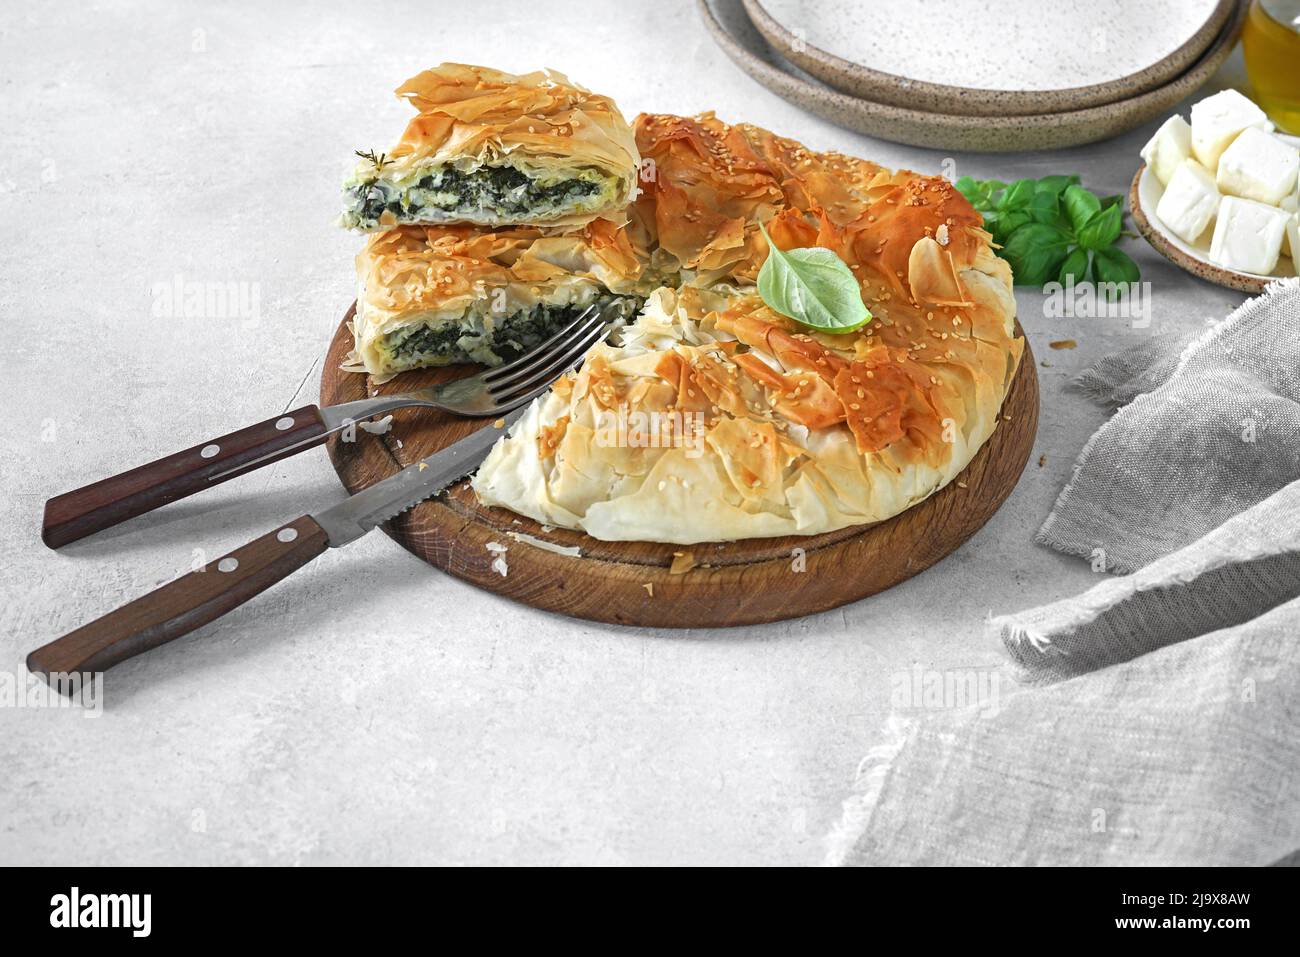 Köstliche Pie mit Spinat und Feta-Käse - Spanakopita, traditionelle griechische Küche. Stockfoto